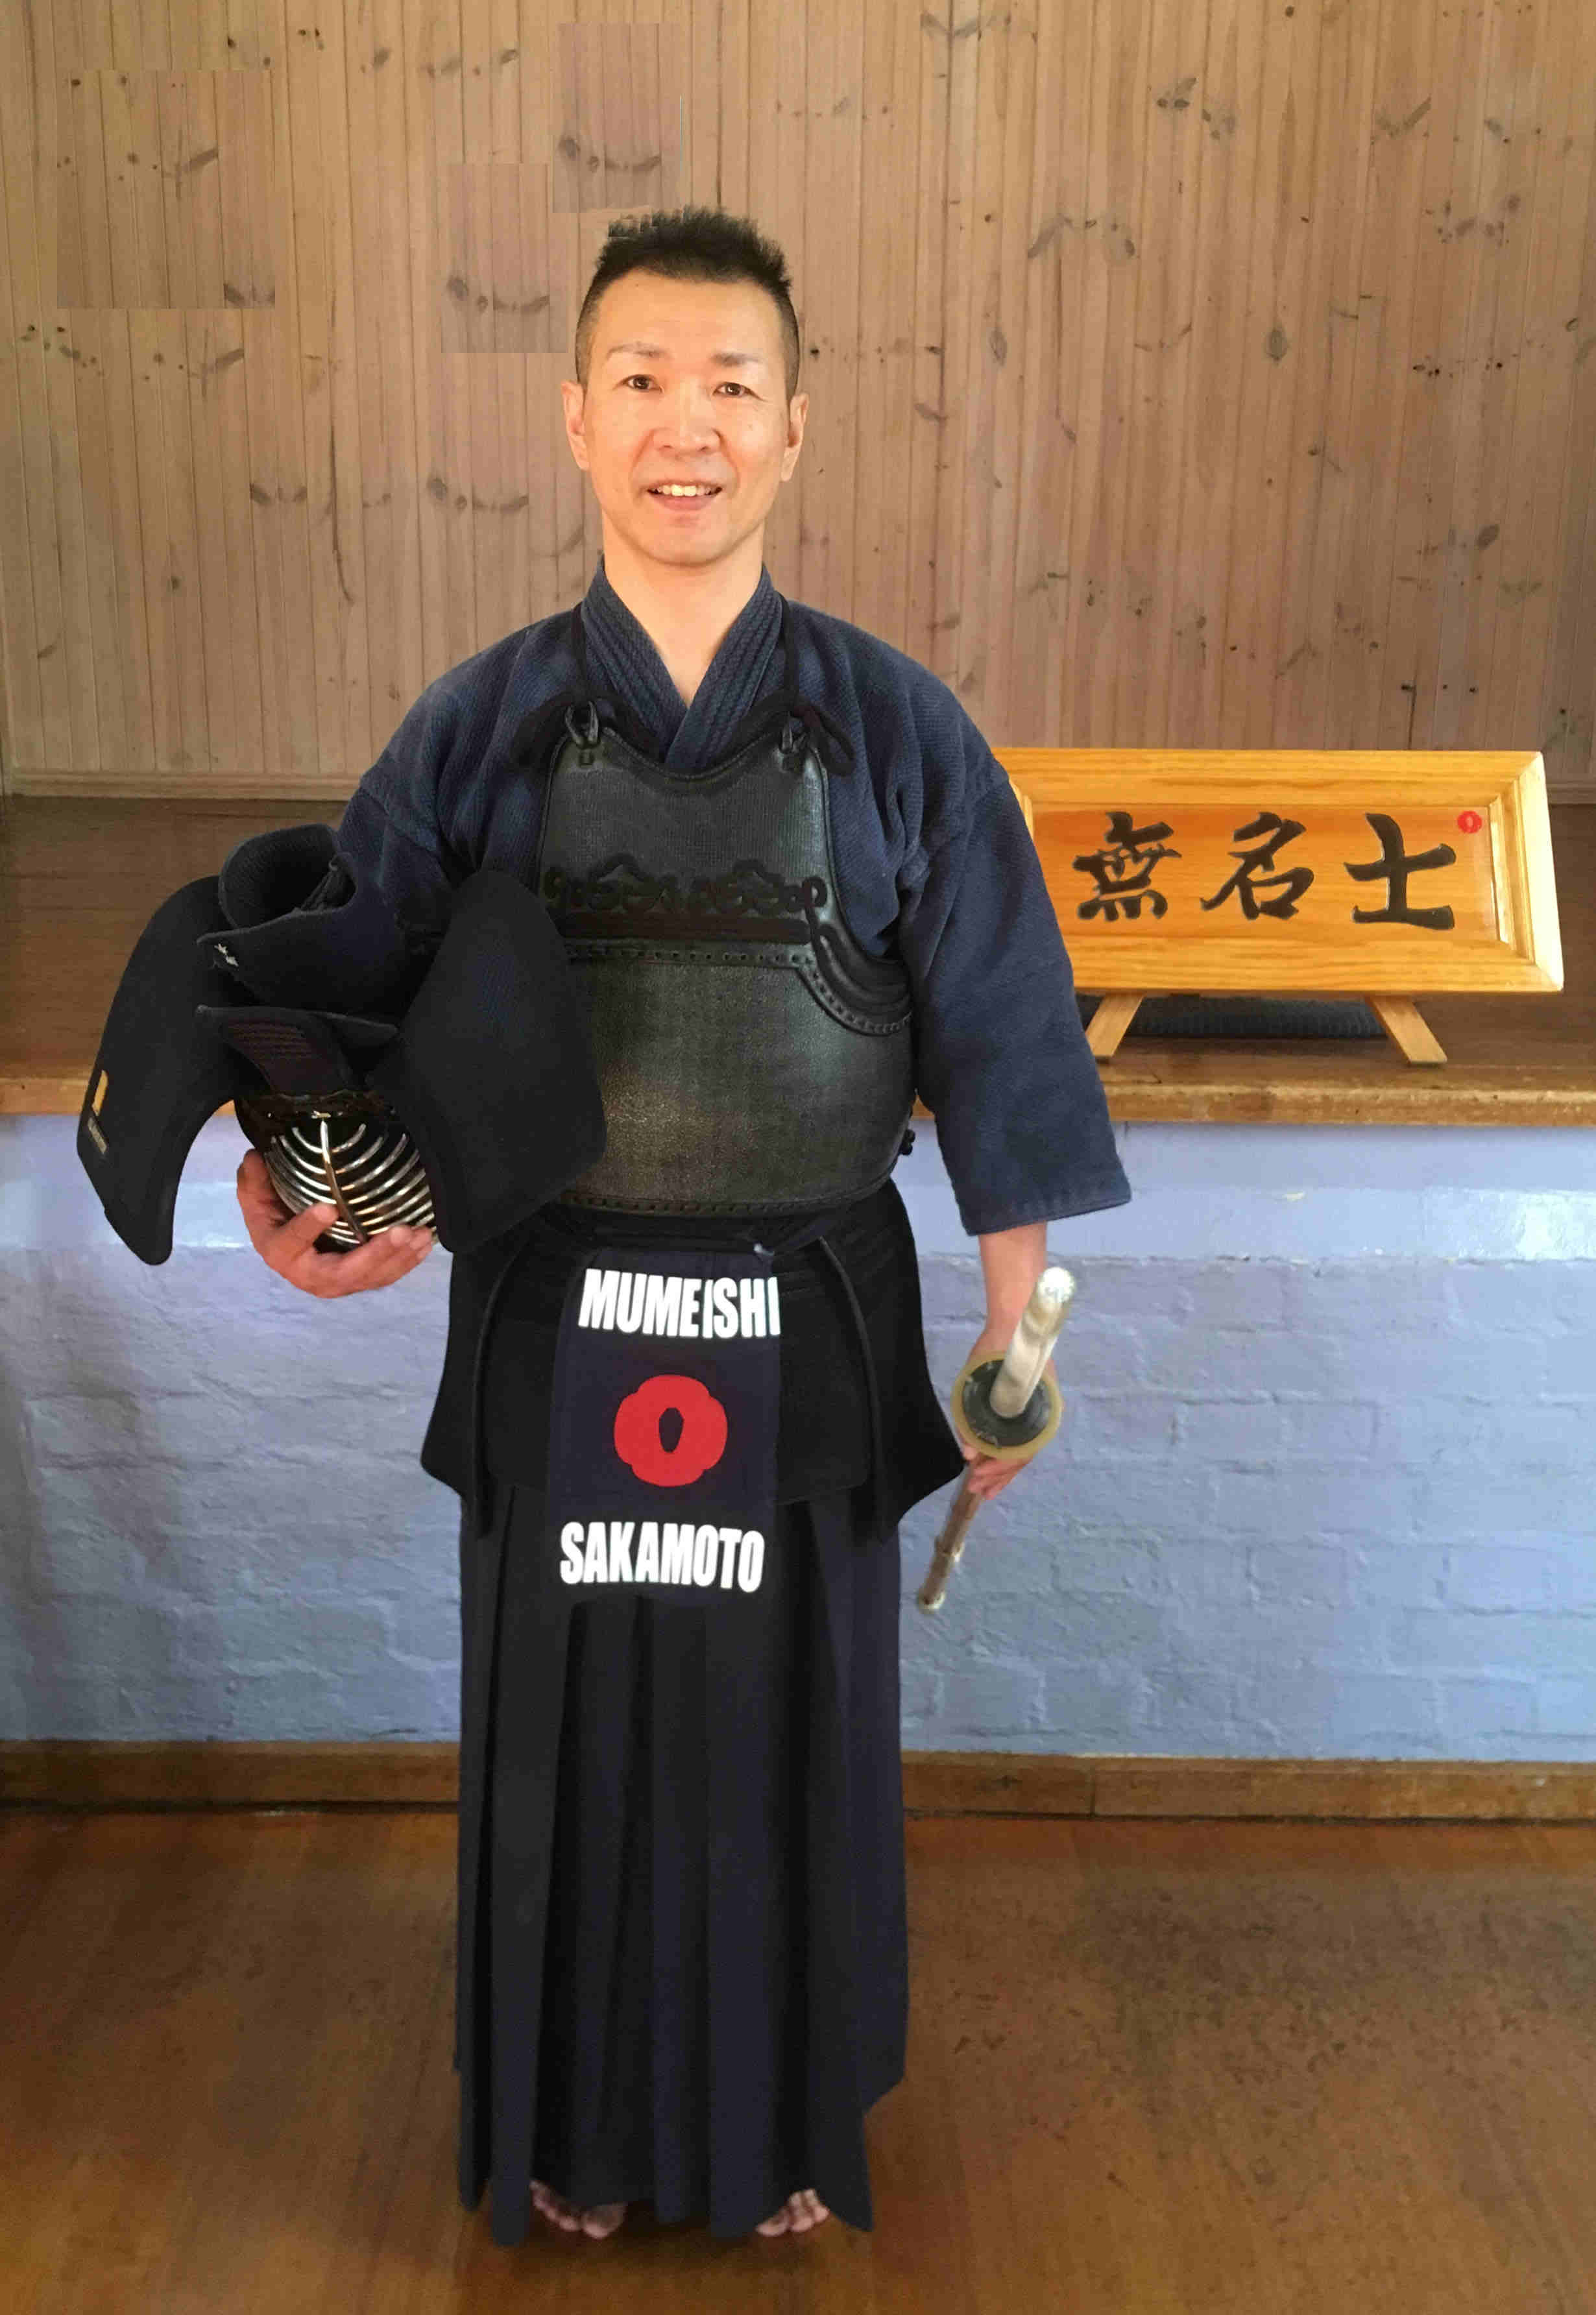 Junji Sakamoto